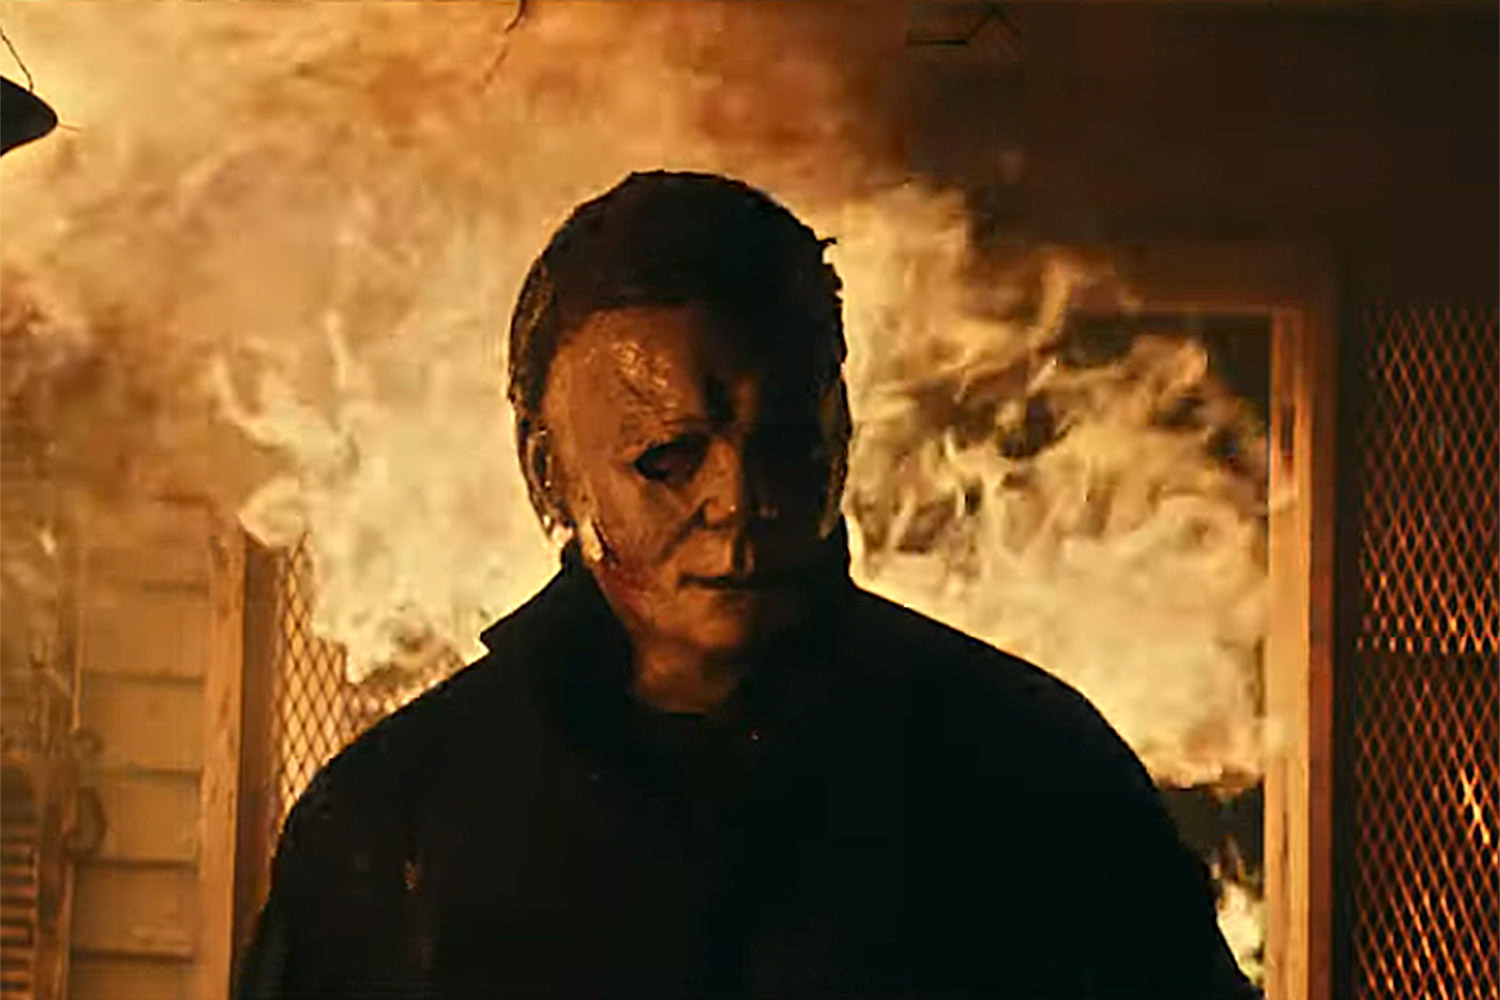 Halloween Ends: trailer do novo filme da franquia de terror é divulgado